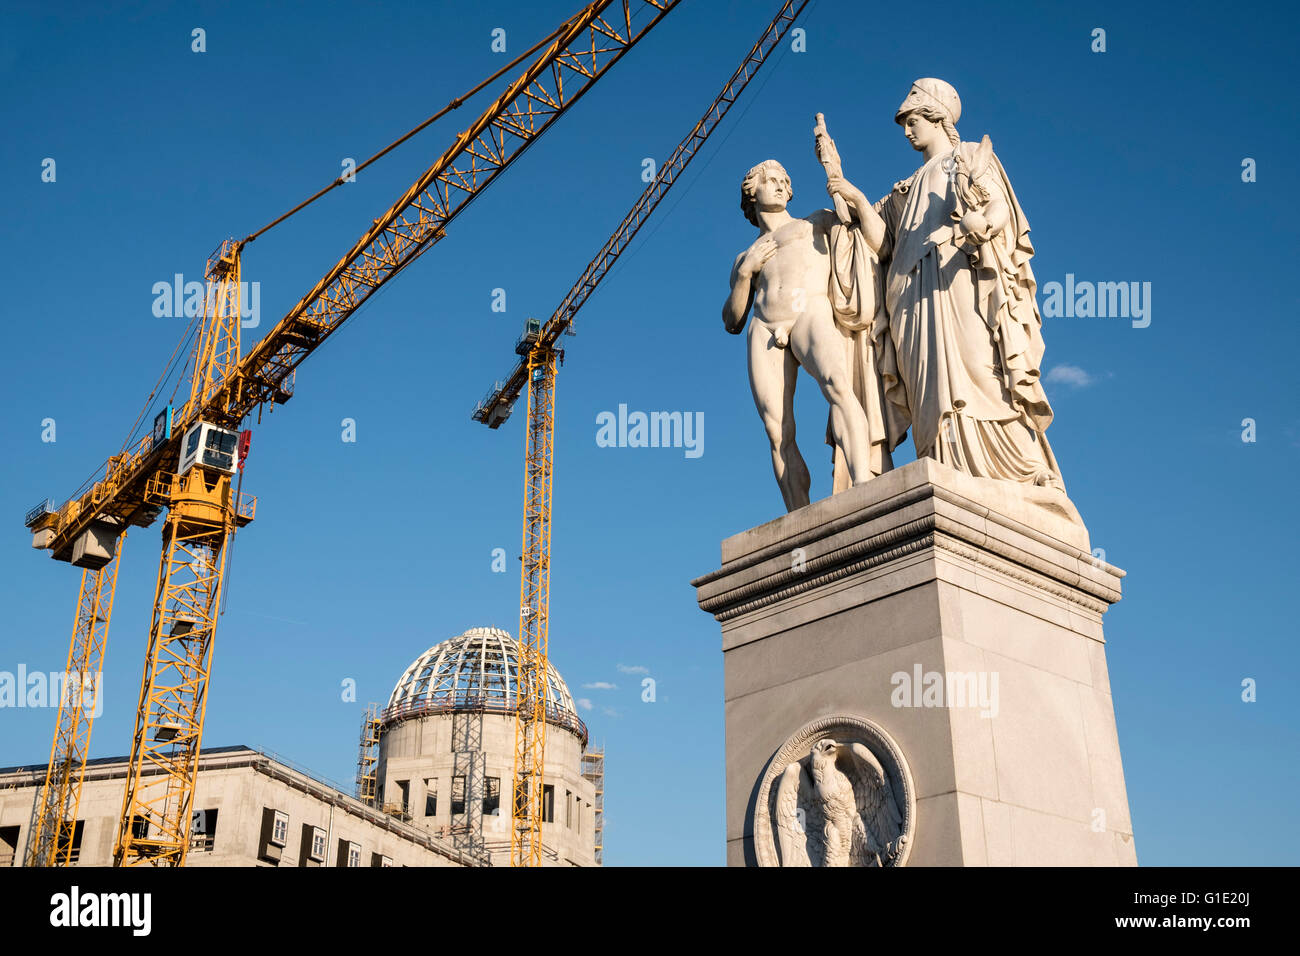 Statue historique sur Palace Bridge construction à côté de l'emplacement de new Berlin Palace, (Schloss) à Mitte Berlin Allemagne Banque D'Images